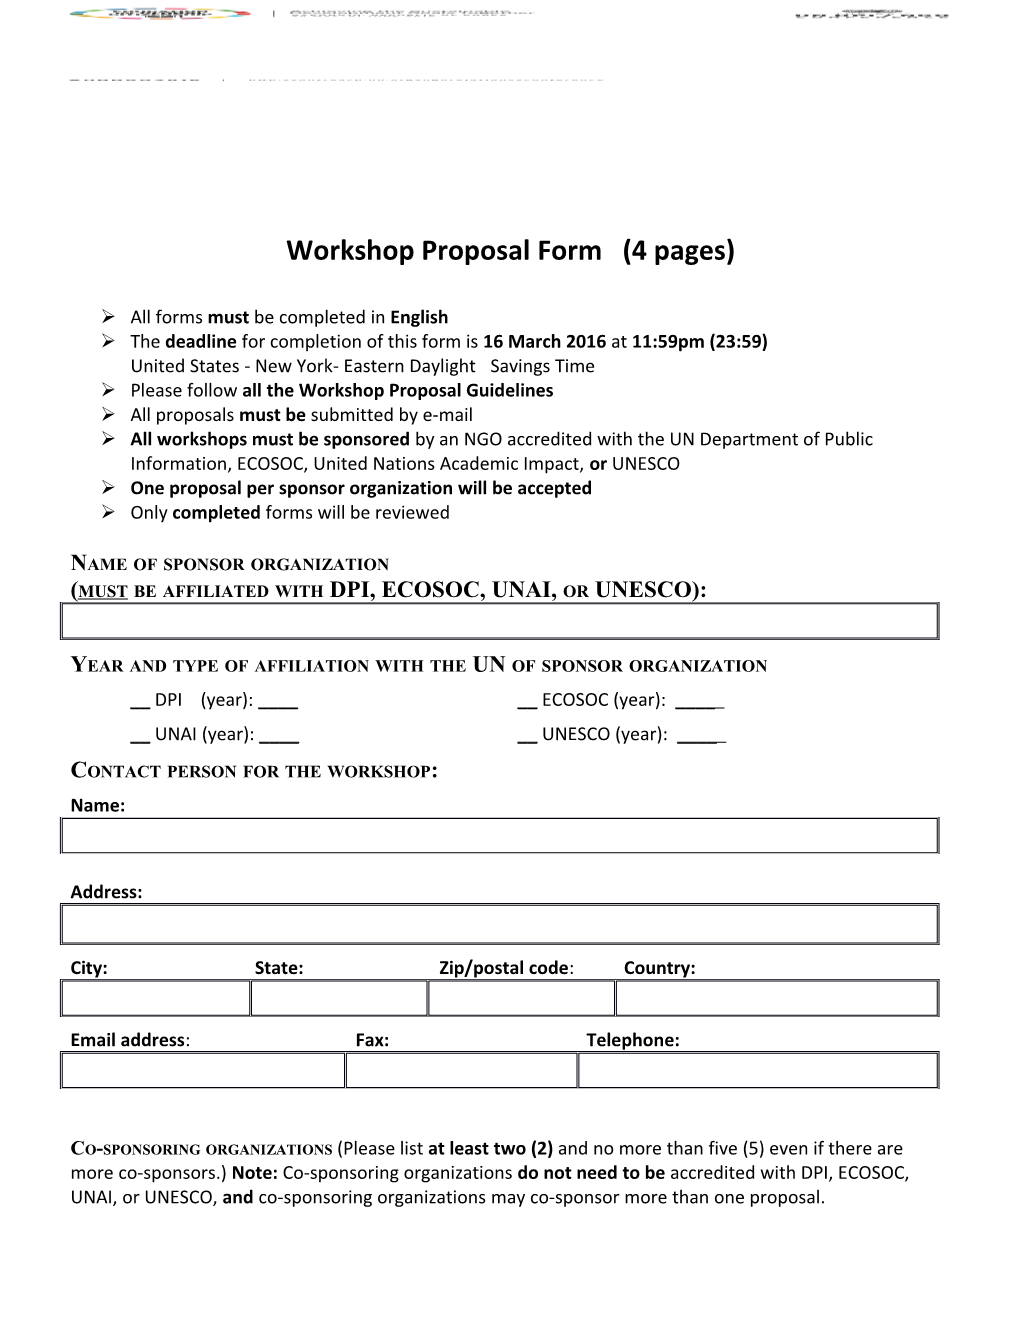 Workshop Proposalform (4 Pages)